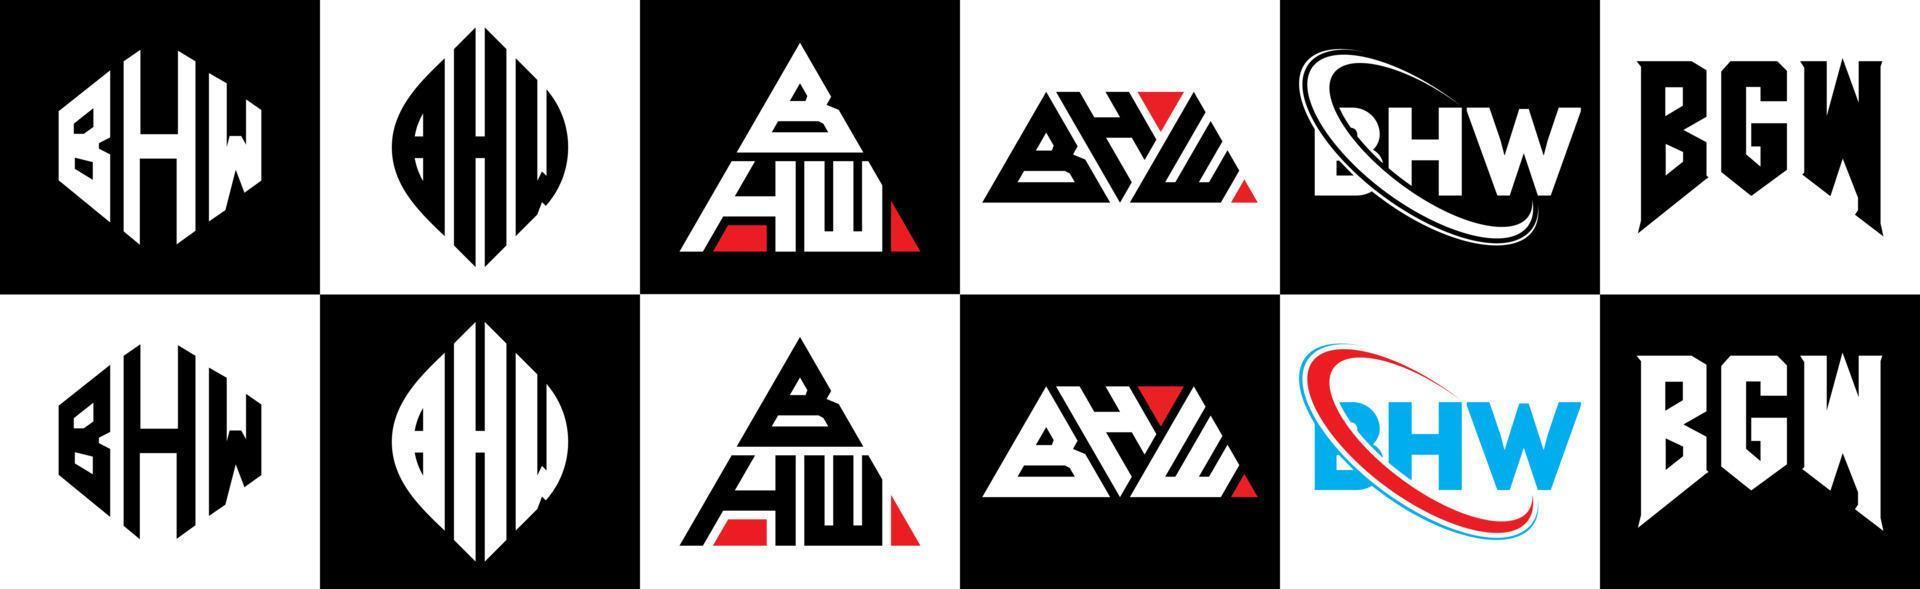 design de logotipo de letra bhw em seis estilo. bhw polígono, círculo, triângulo, hexágono, estilo plano e simples com logotipo de letra de variação de cor preto e branco definido em uma prancheta. bhw logotipo minimalista e clássico vetor